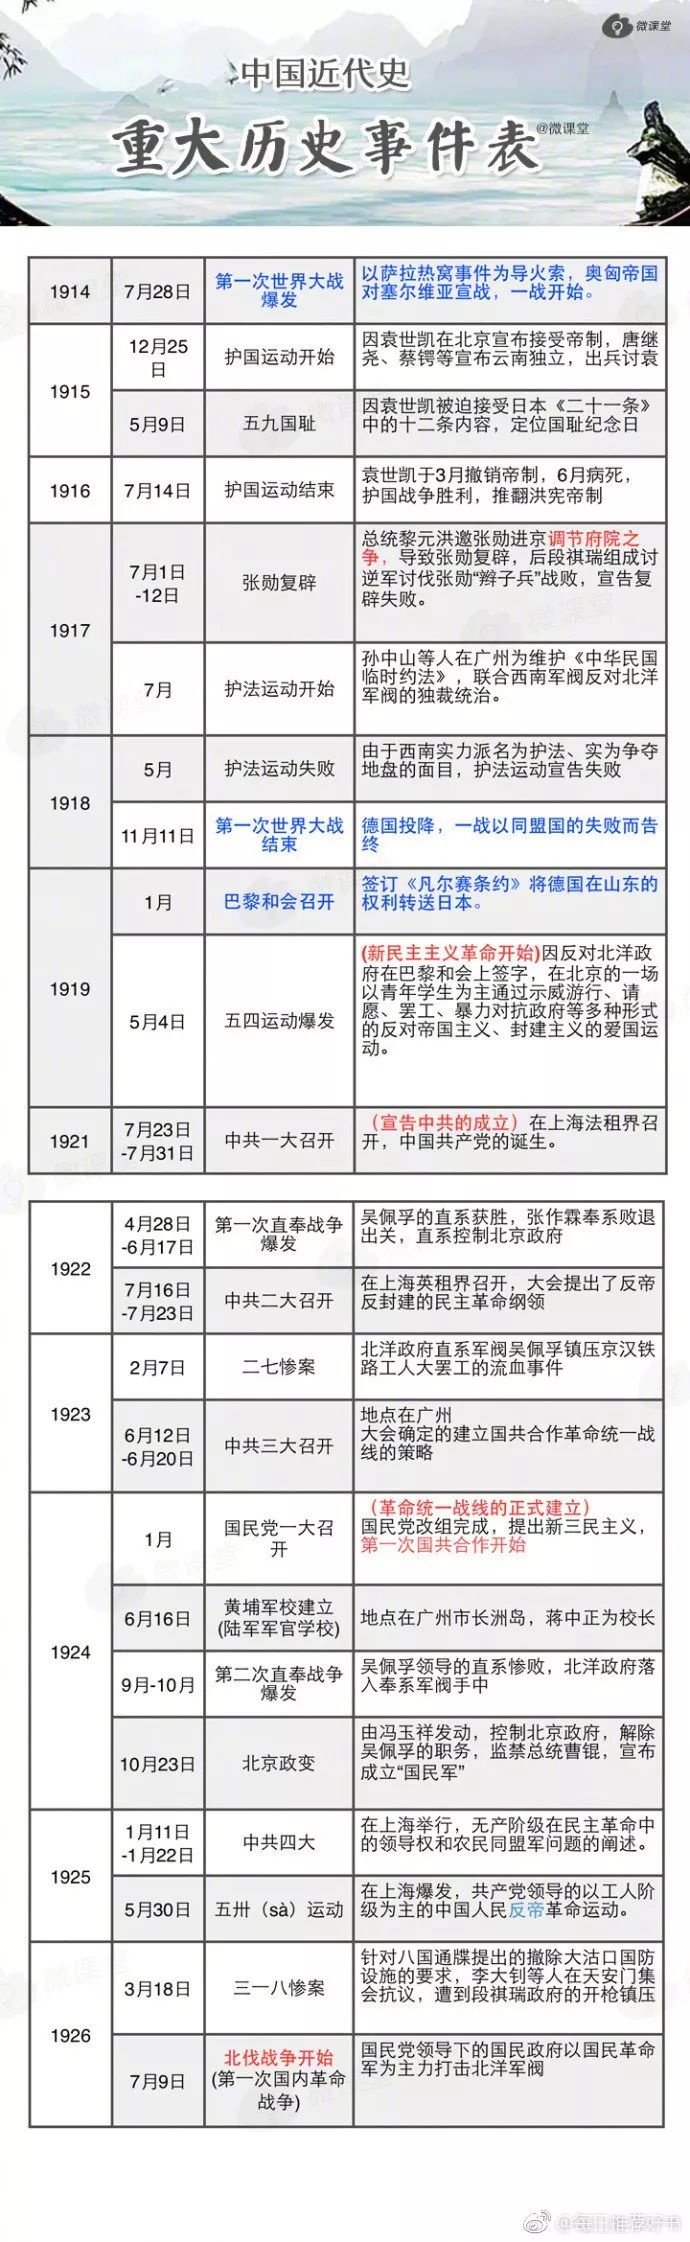 中国近代史重大历史事件表